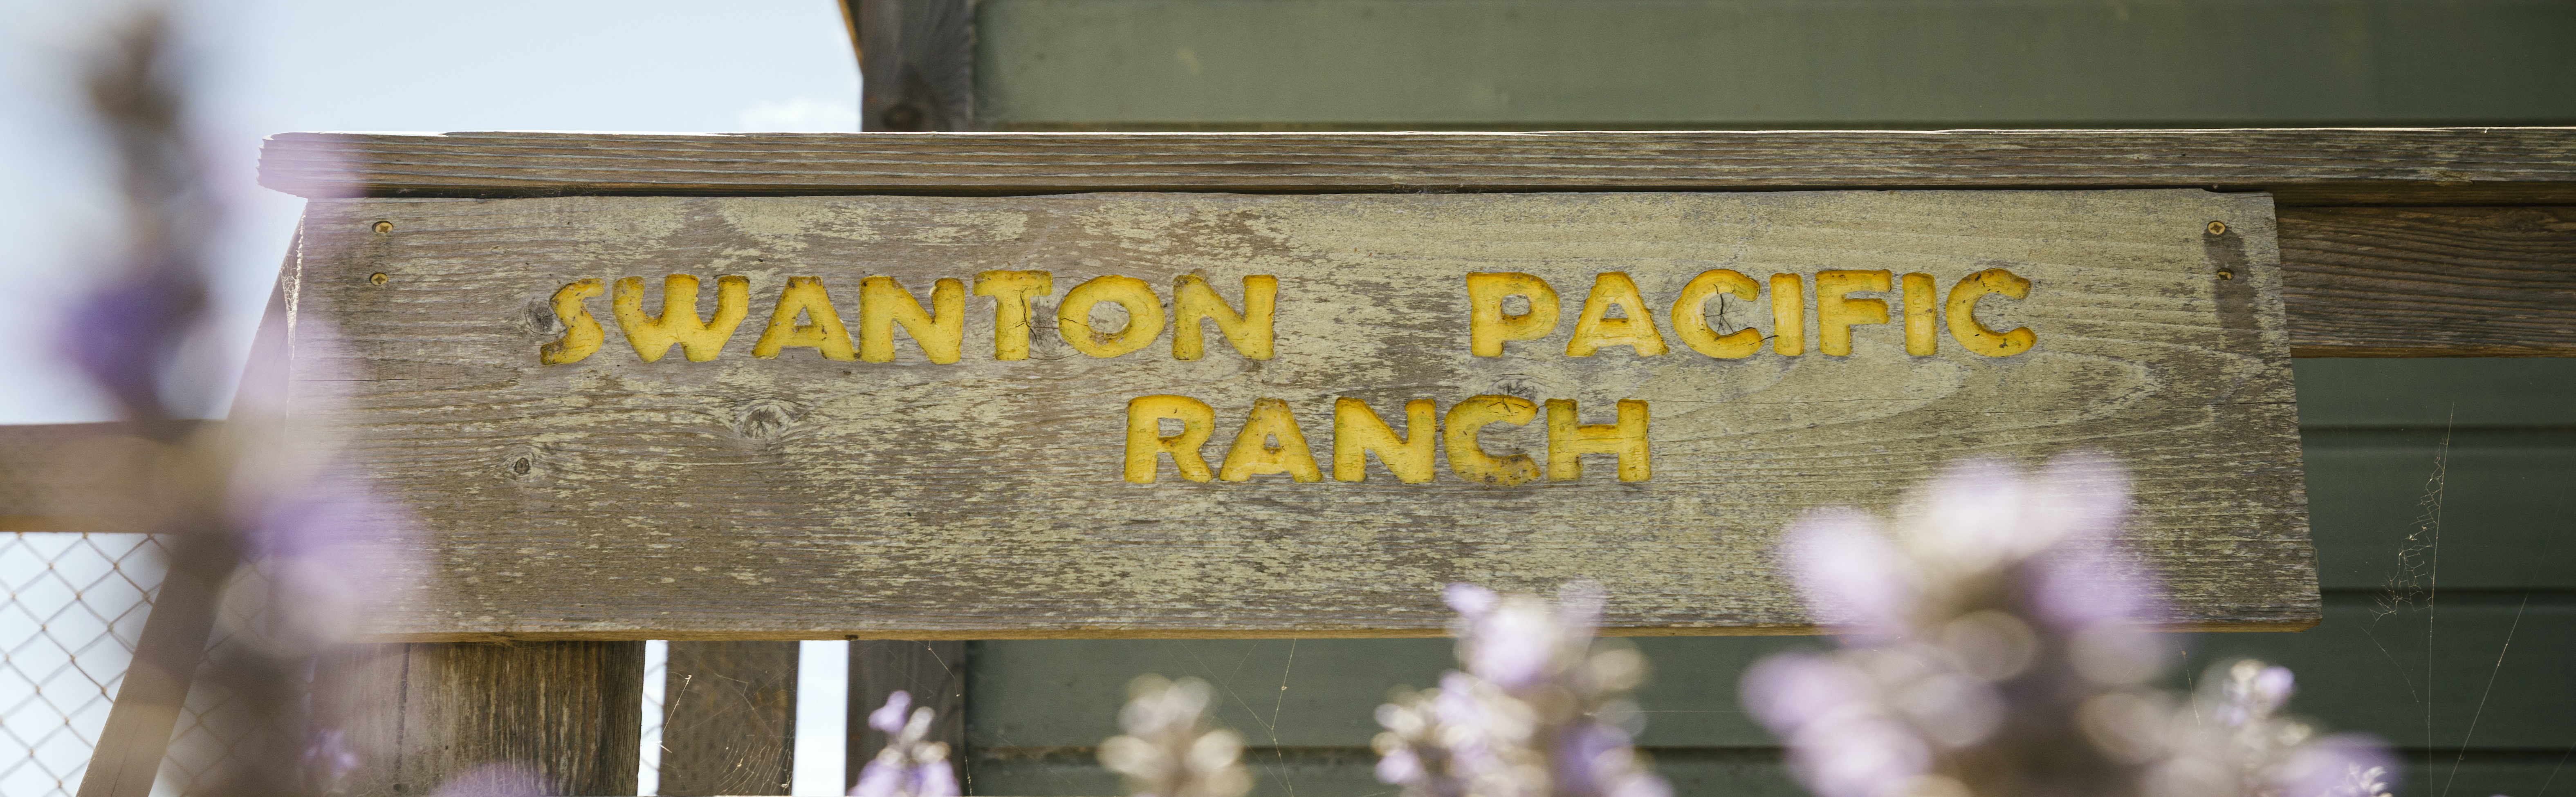 Swanton Pacific Ranch